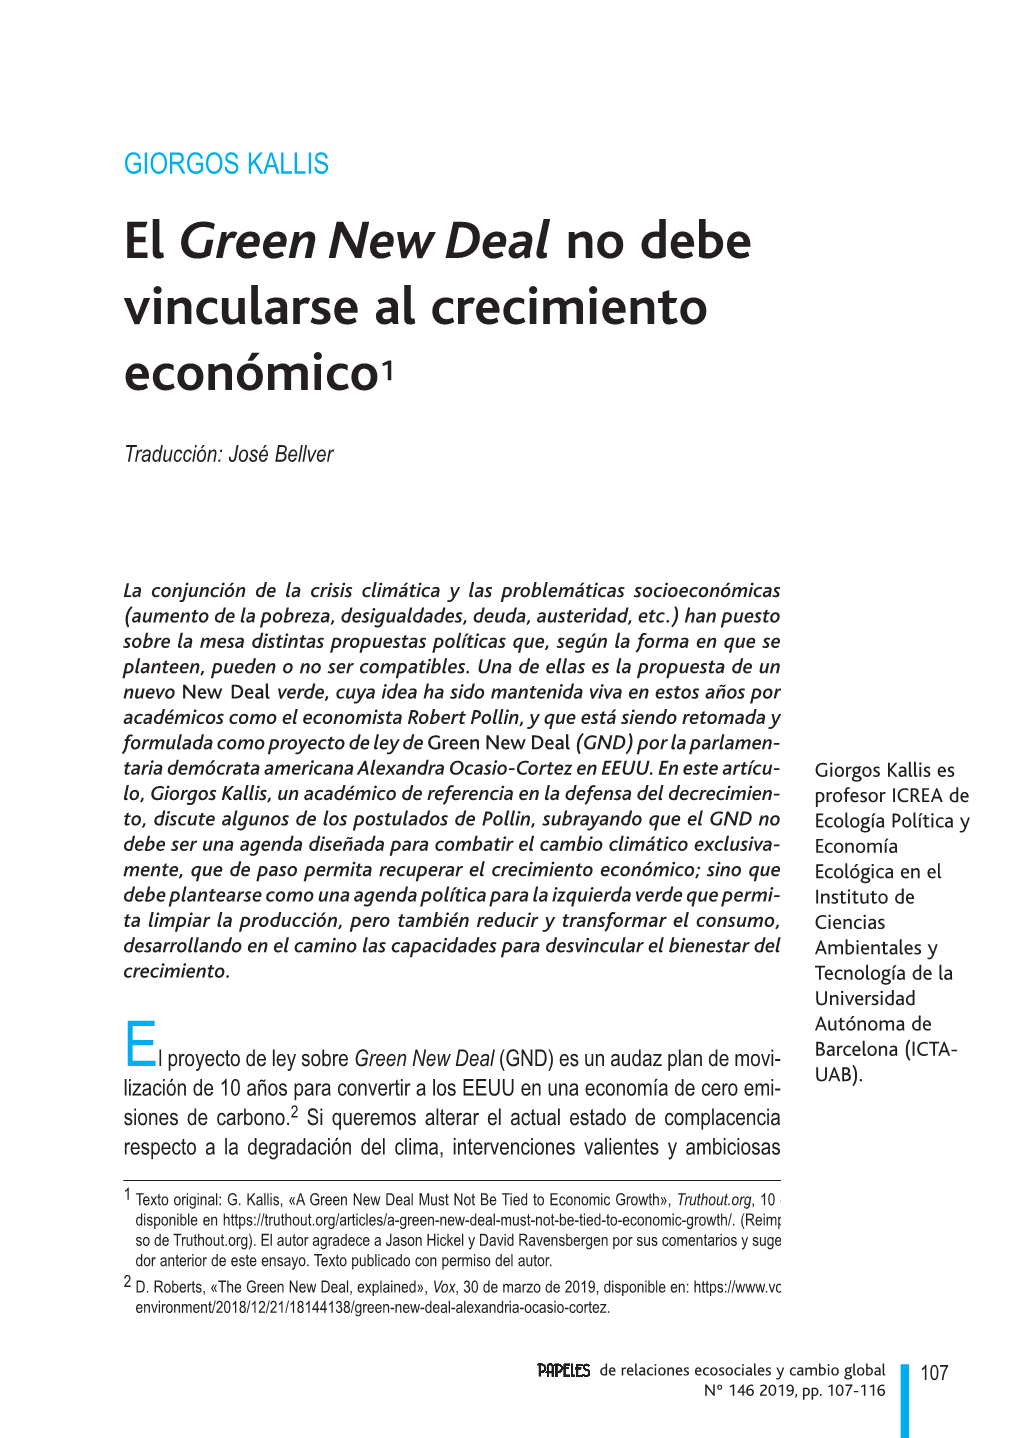 El Green New Deal No Debe Vincularse Al Crecimiento Económico1